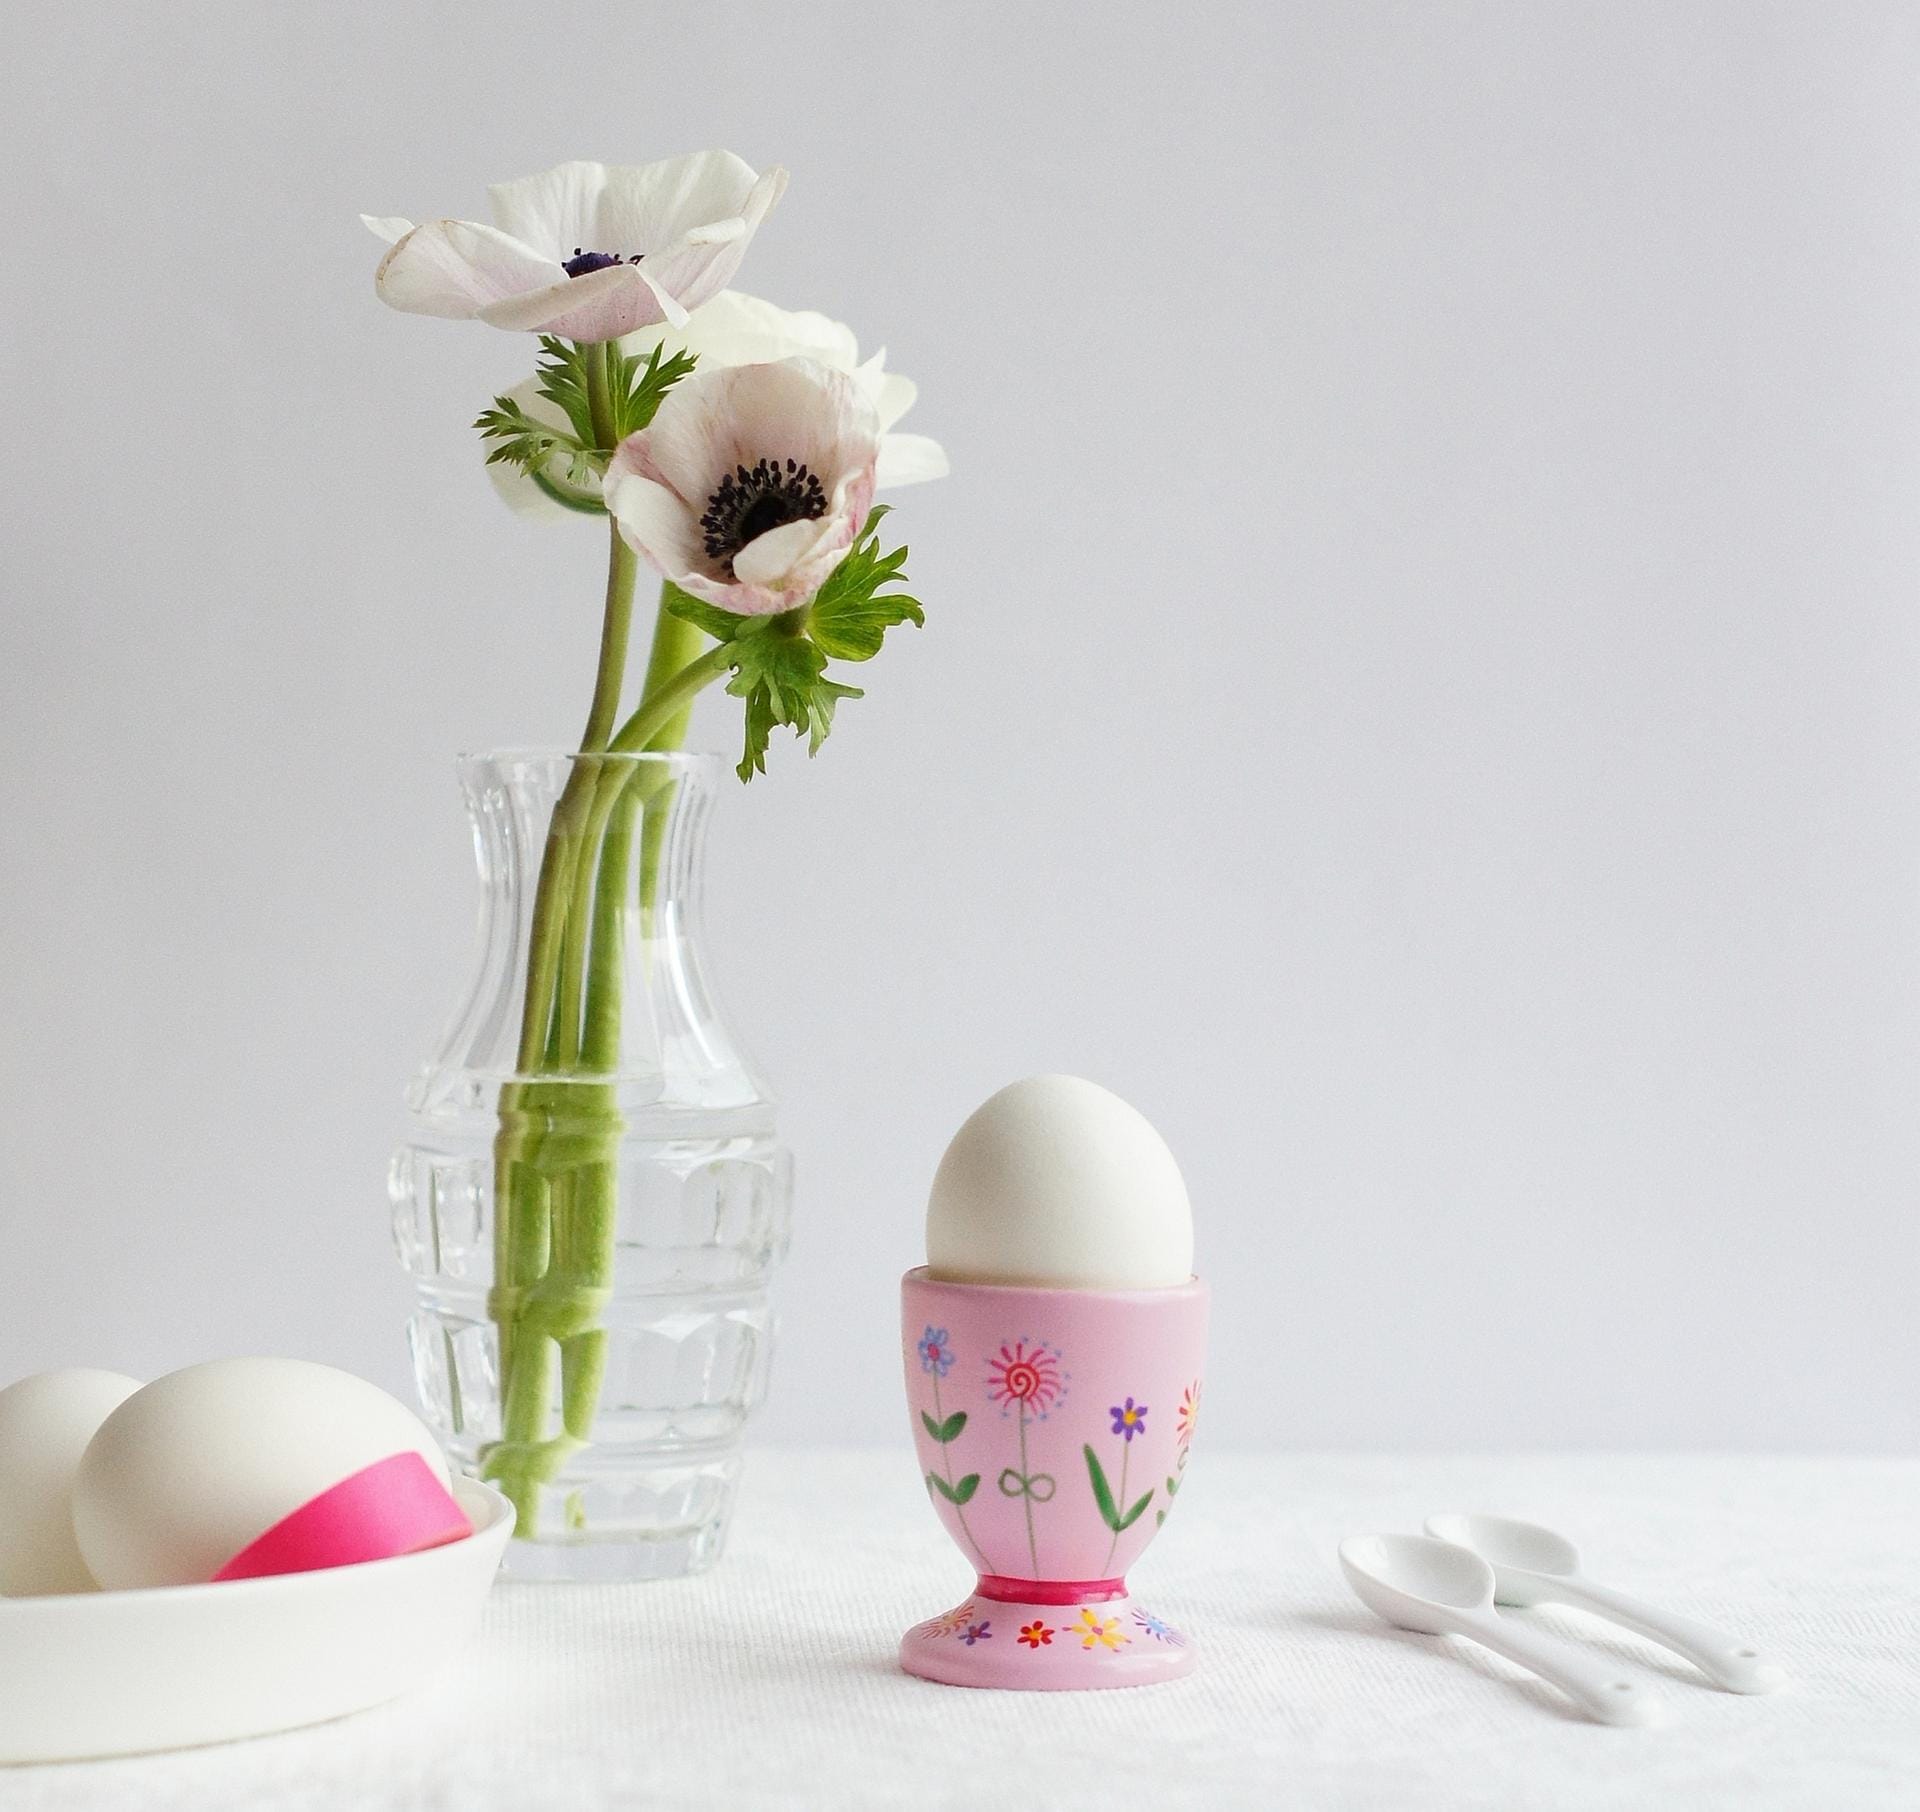 Pozellanhasen, Glitzereier, rosa Eierbecher und erlesener Blumenschmuck: So schön kann das Osterfrühstück sein.